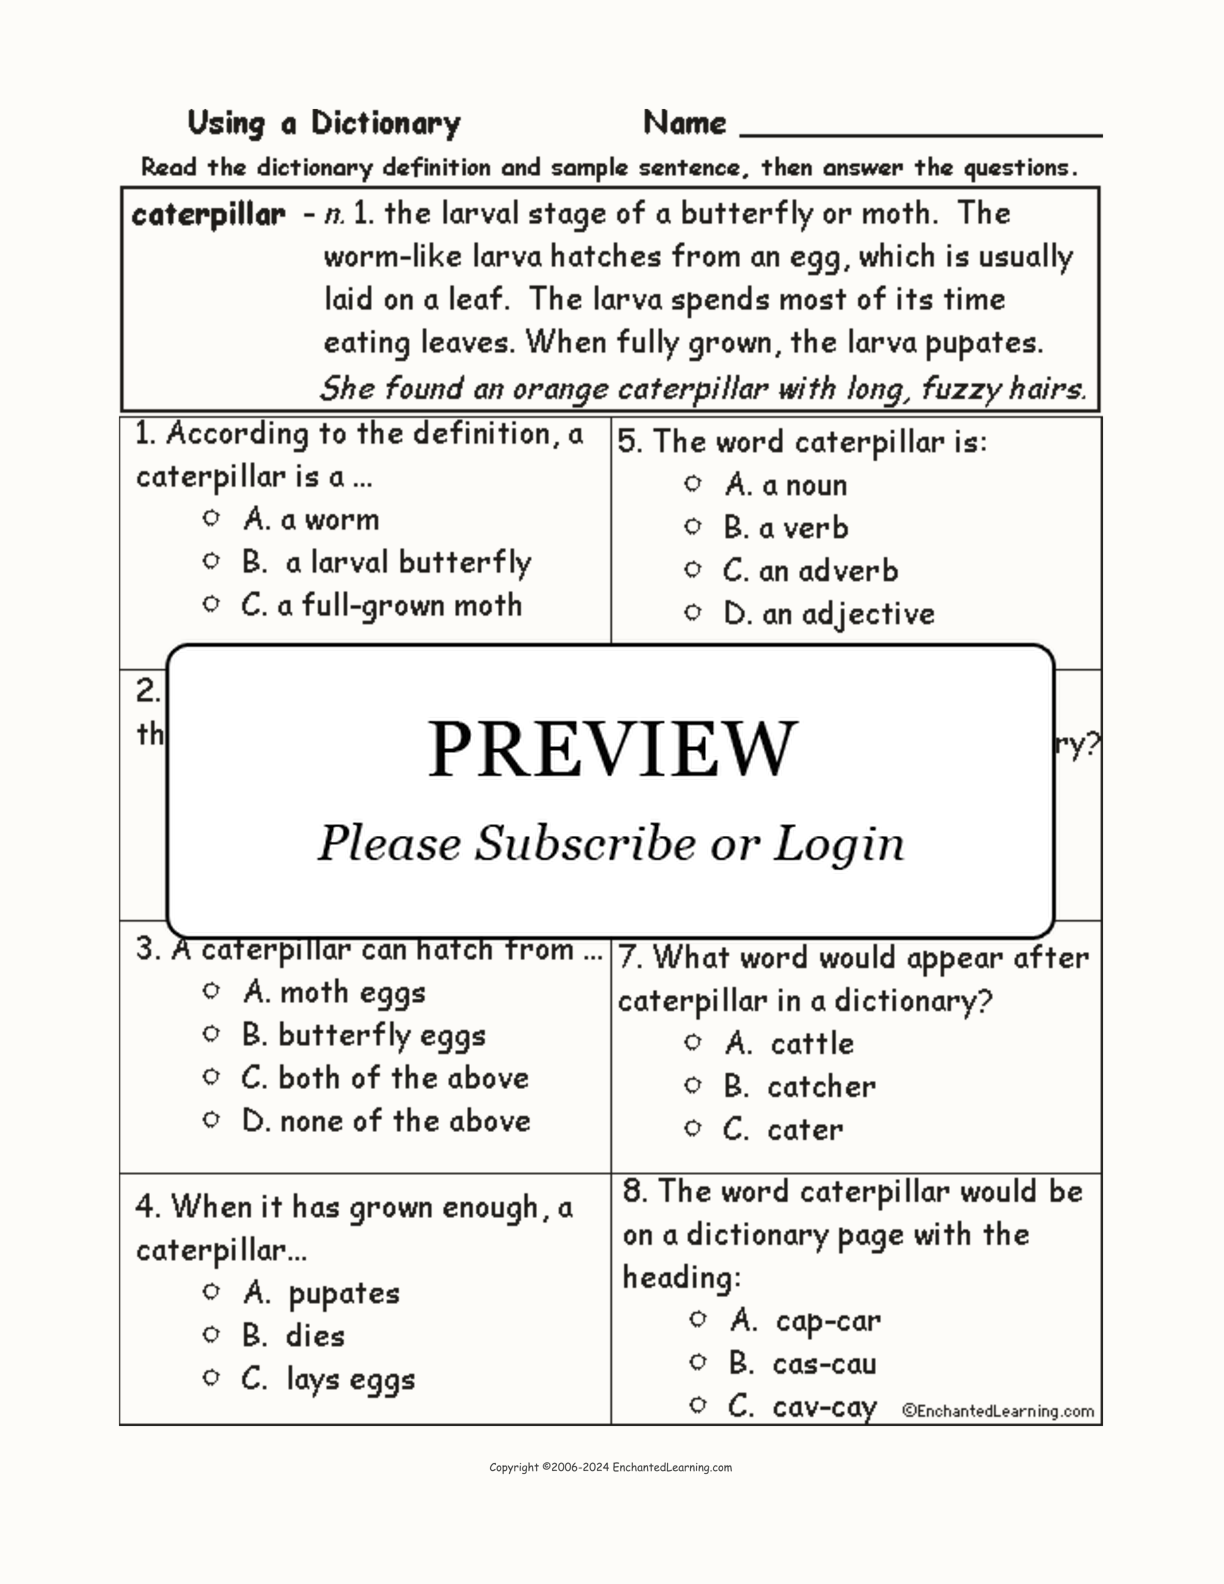 Caterpillar Definition Quiz interactive worksheet page 1